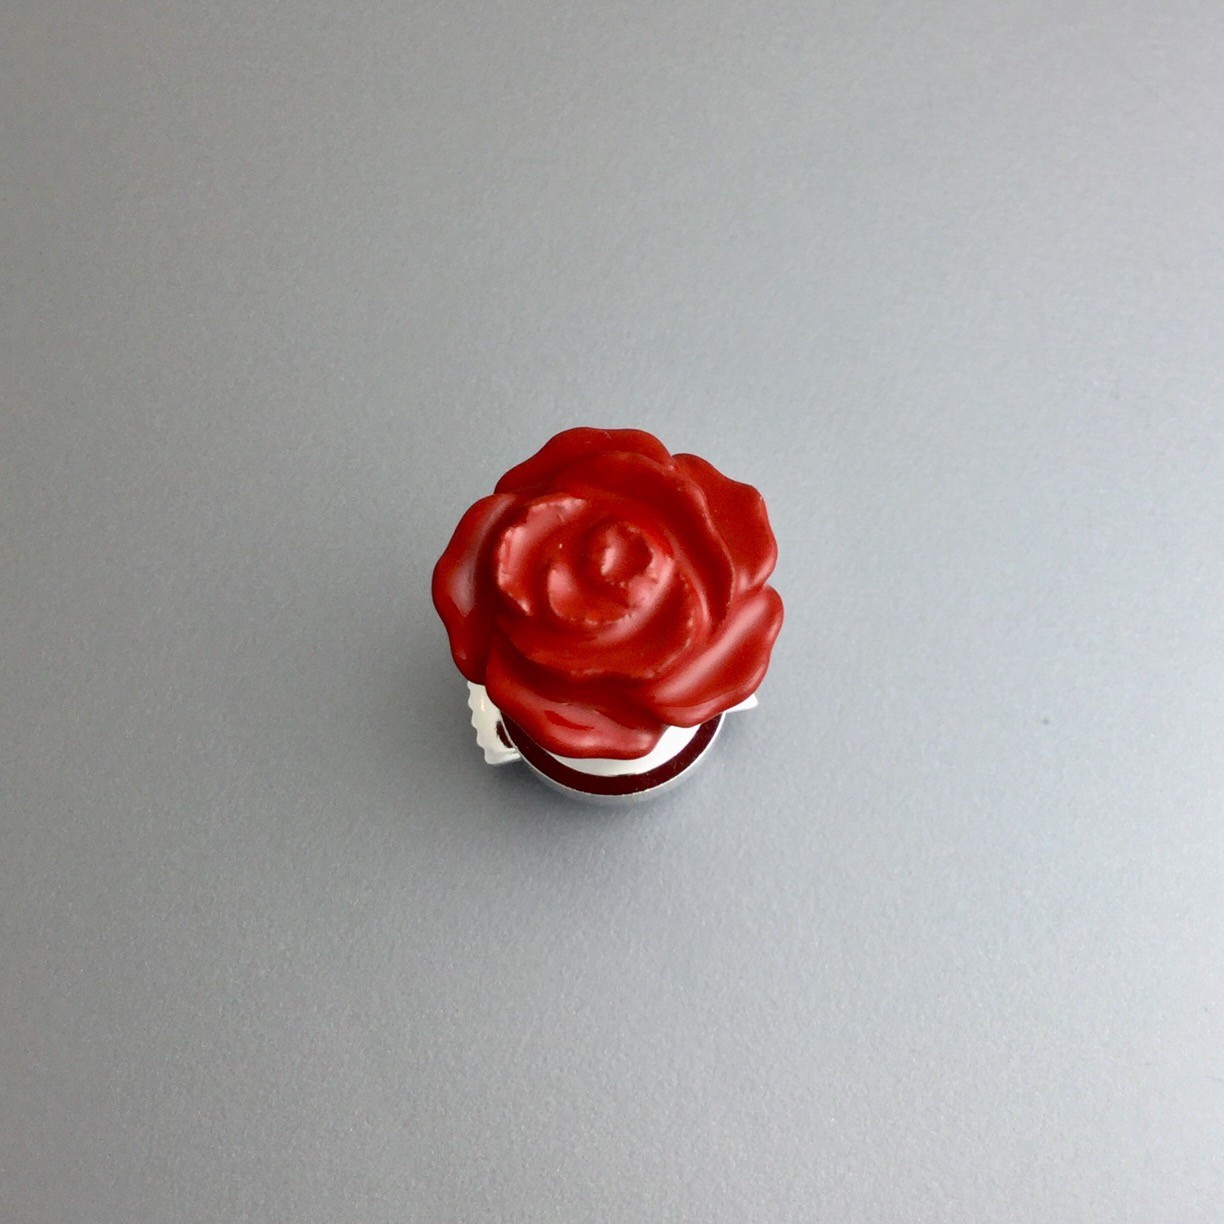 漆ピンブローチ 赤 薔薇 小 Iichi ハンドメイド クラフト作品 手仕事品の通販